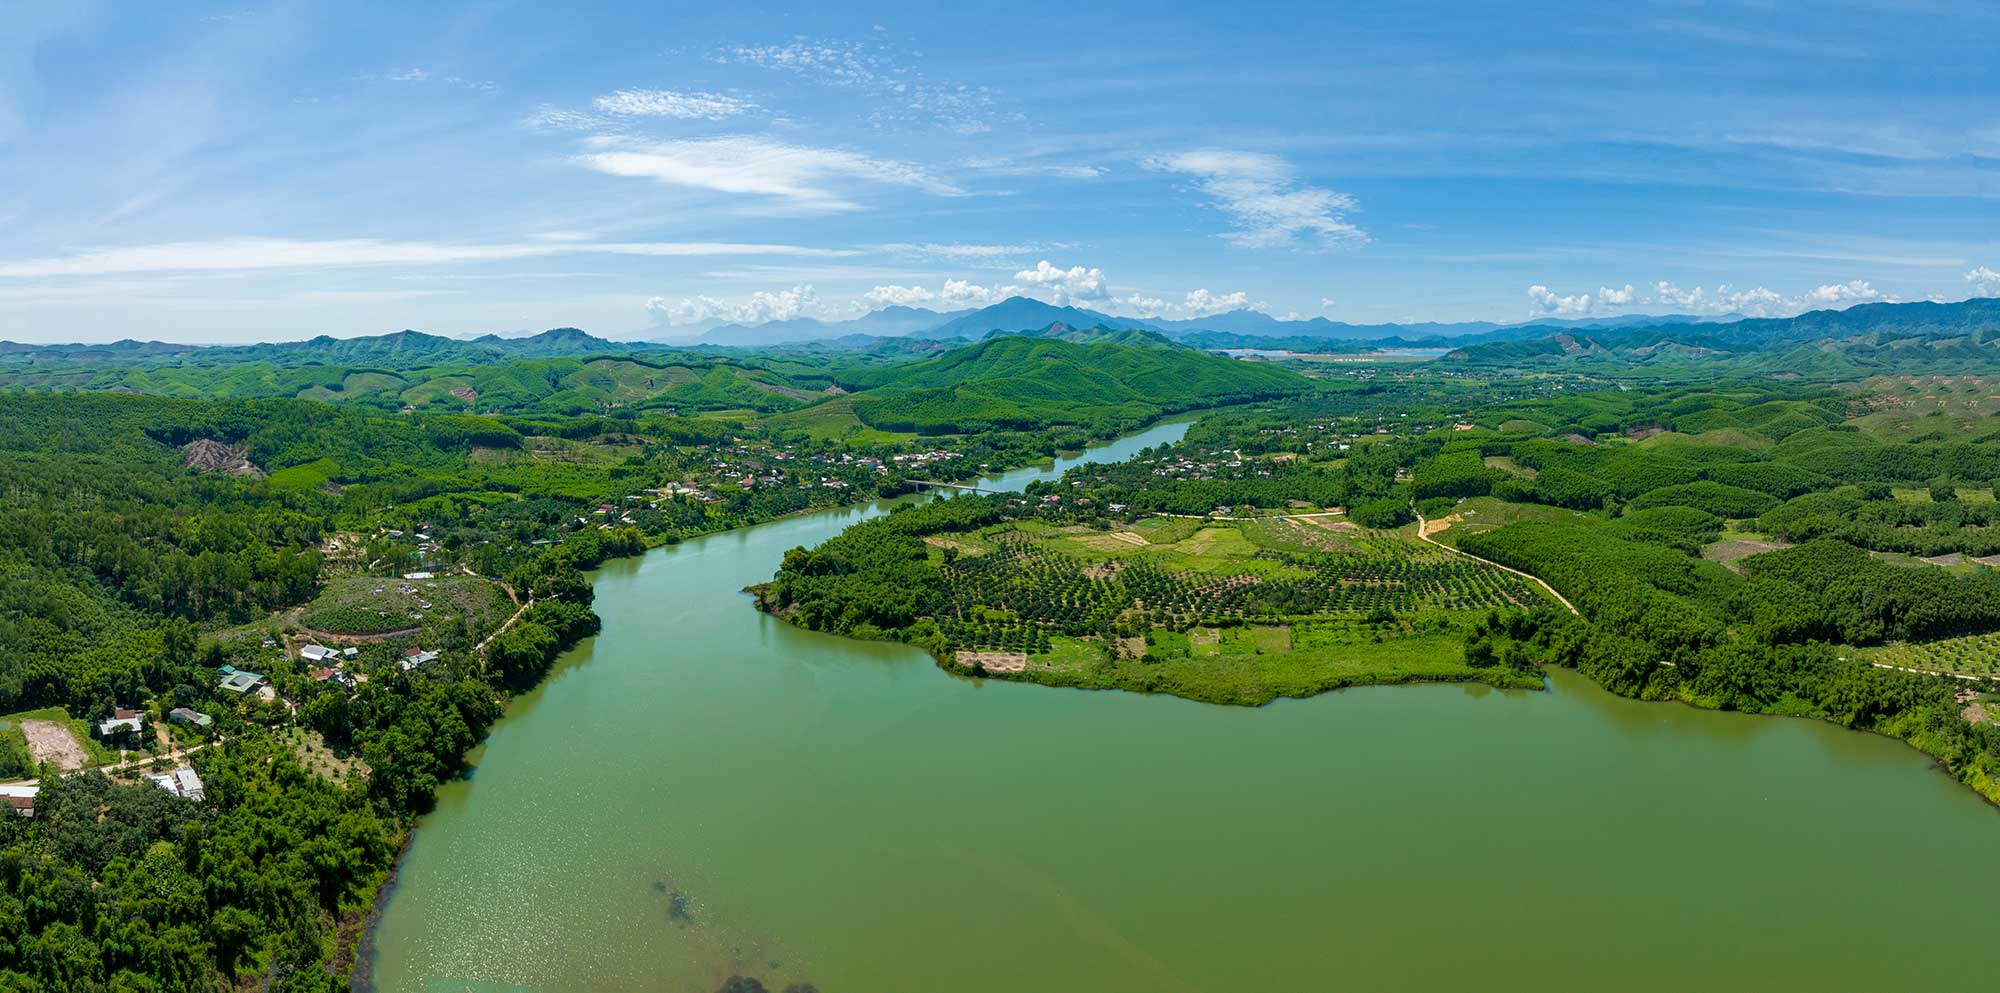 Hồ Tả Trạch